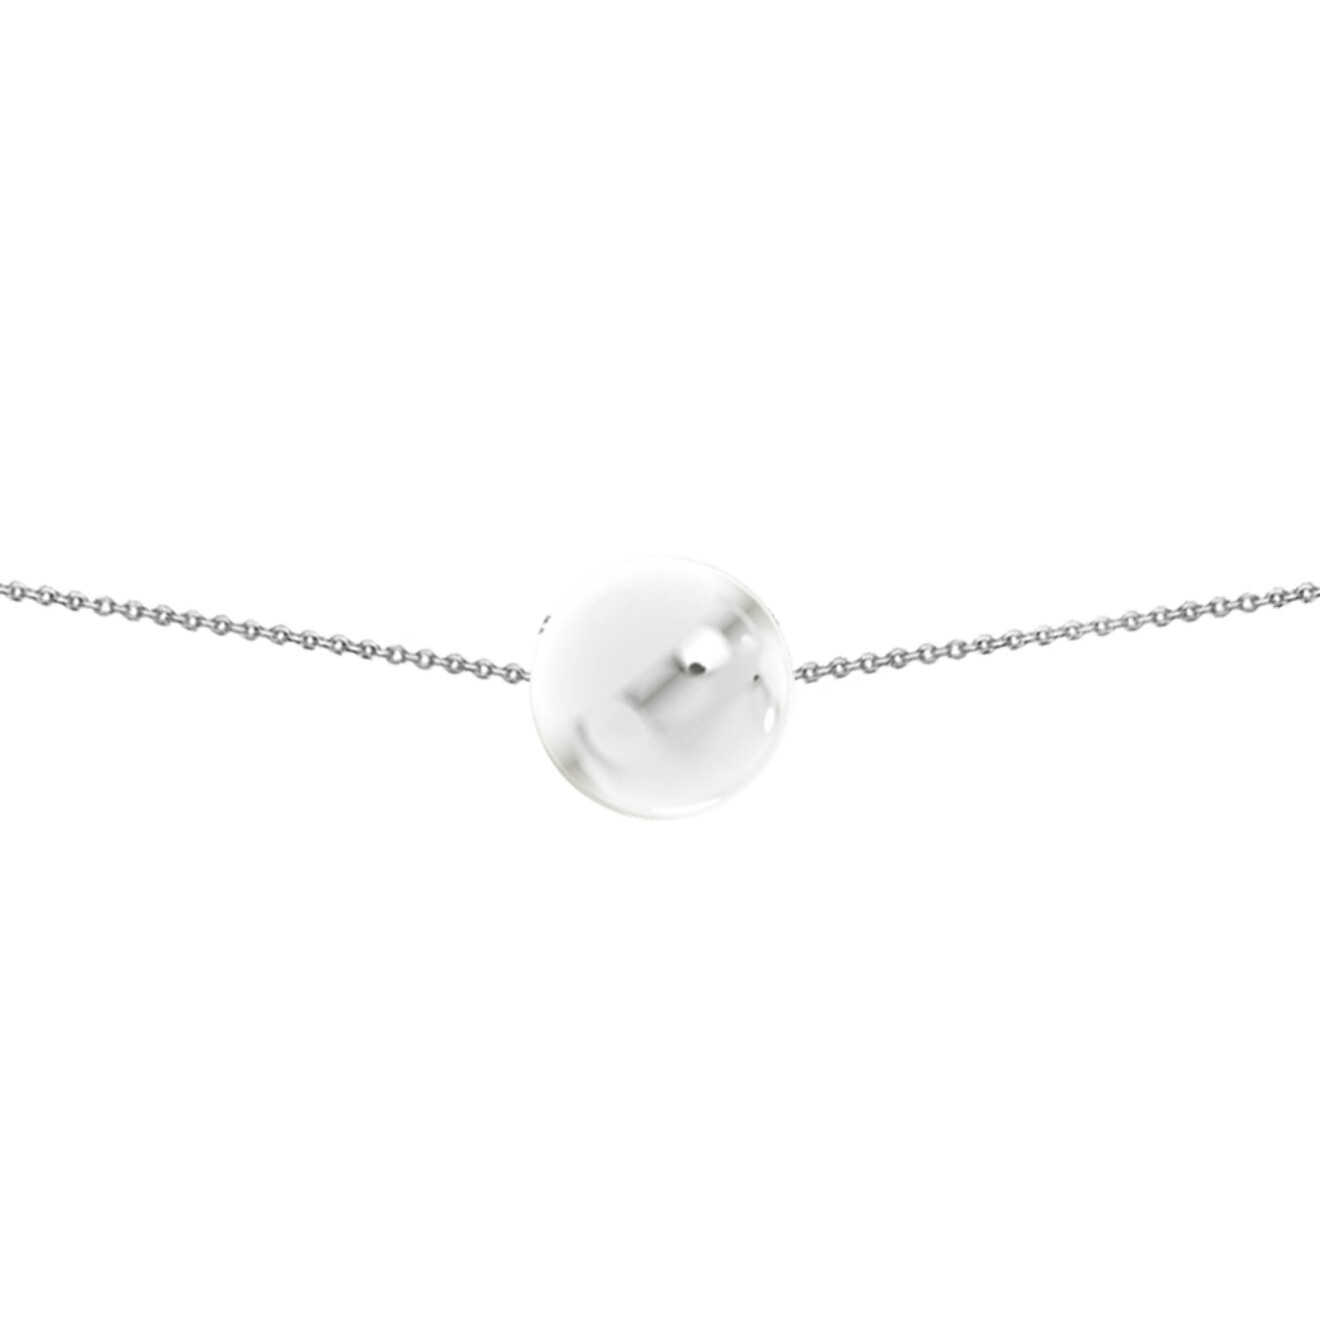 Prosto Jewelry Чокер из серебра с самым большим шаром prosto jewelry моносерьга из серебра с большим позолоченным шаром